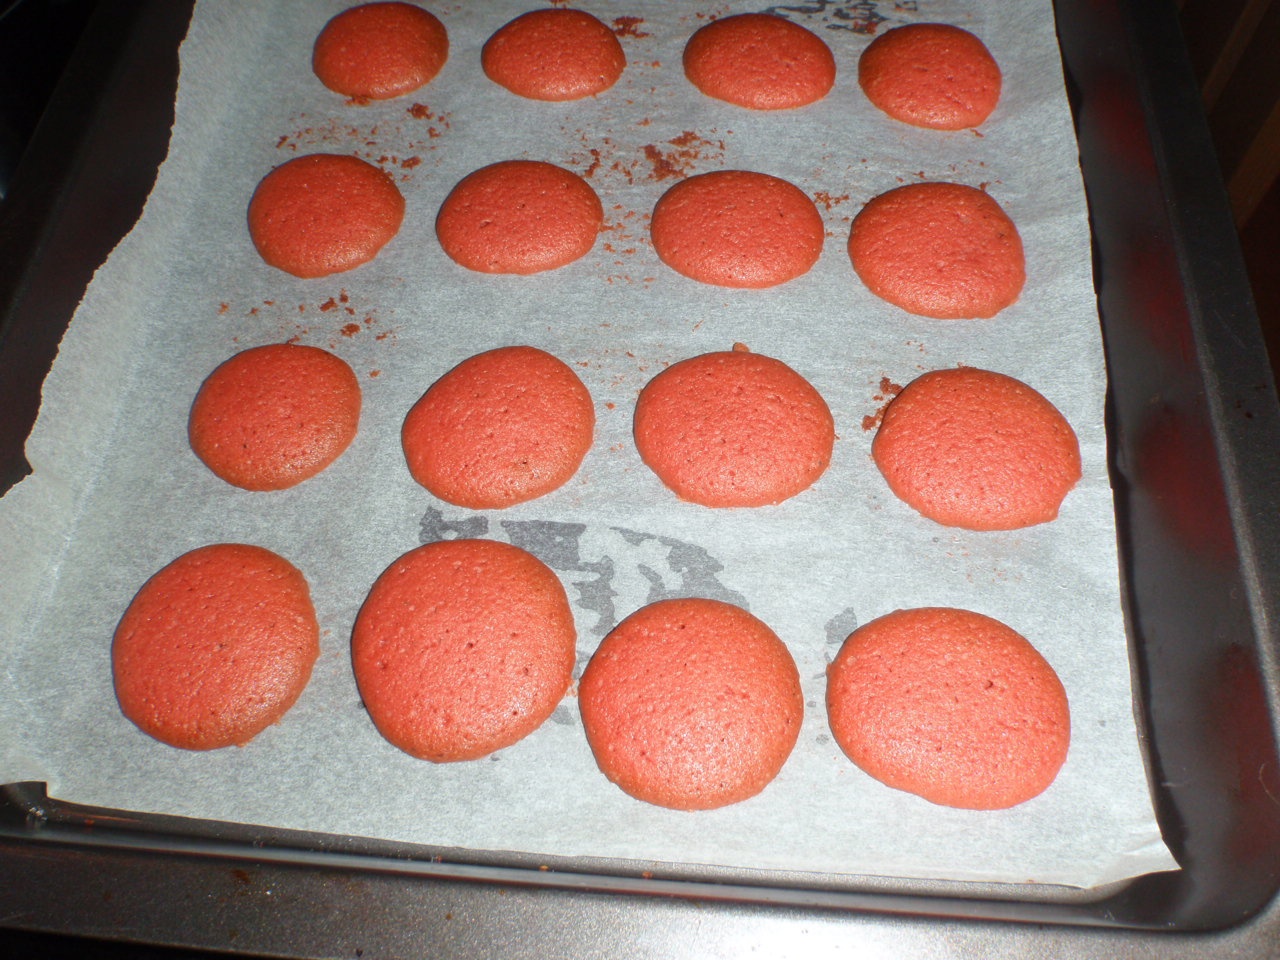 Red velvet sandwich cookies